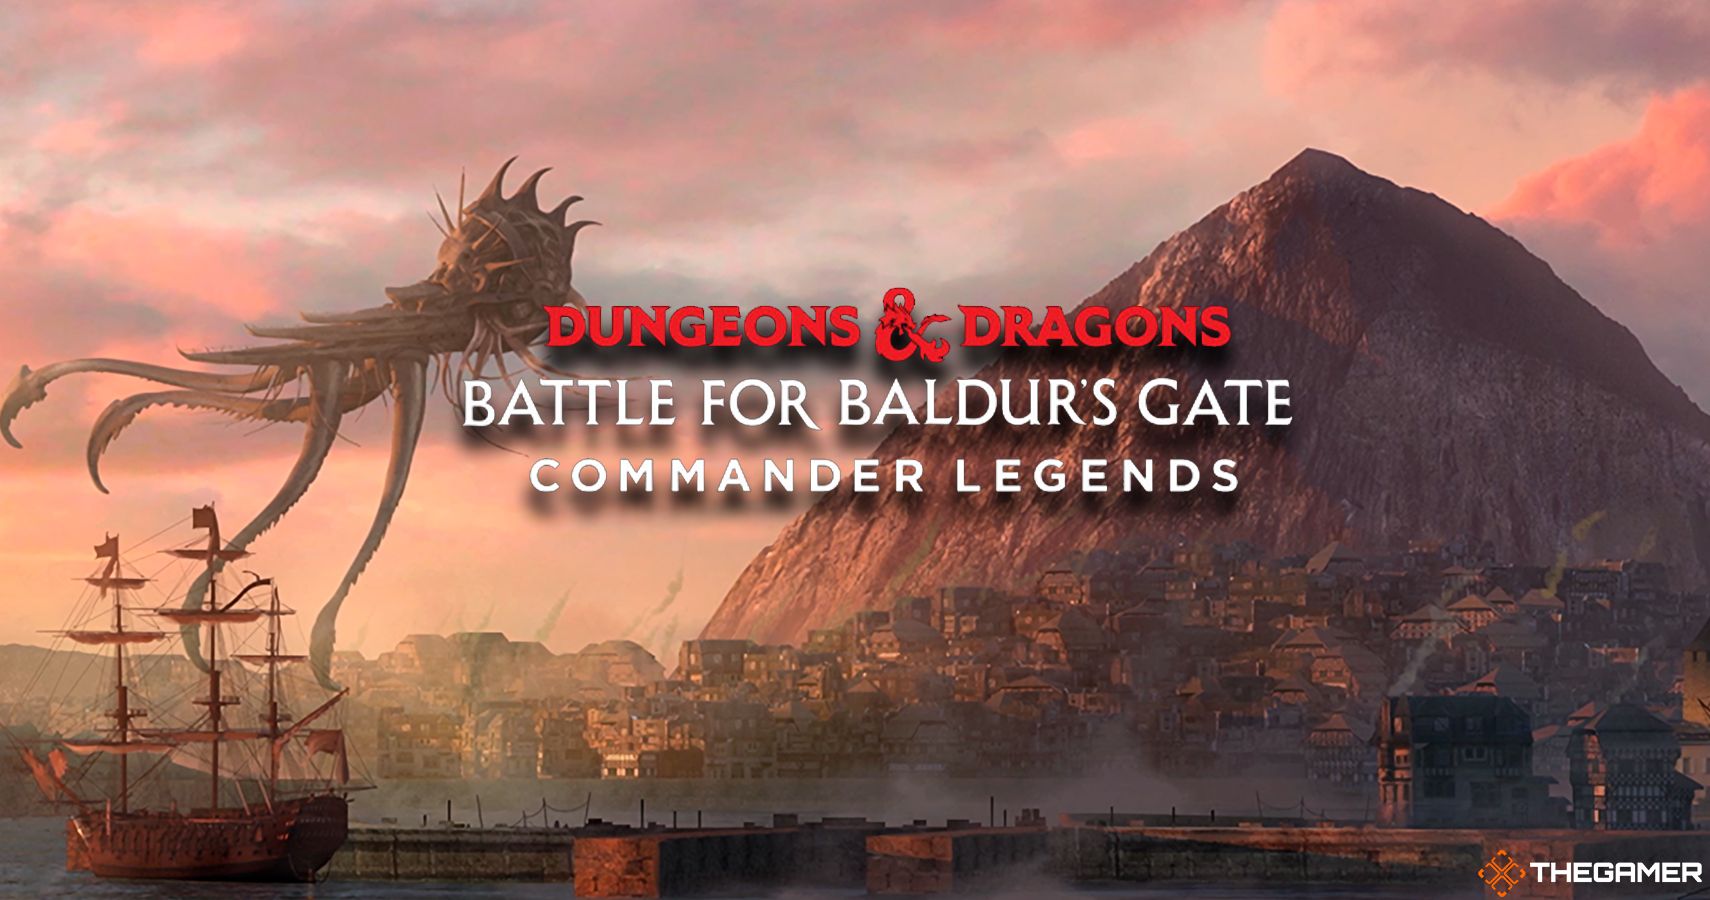 Dungeons & Dragons Battle for Baldur's Gate Commander Legends, featuring concept art by Kamila Szutenberg